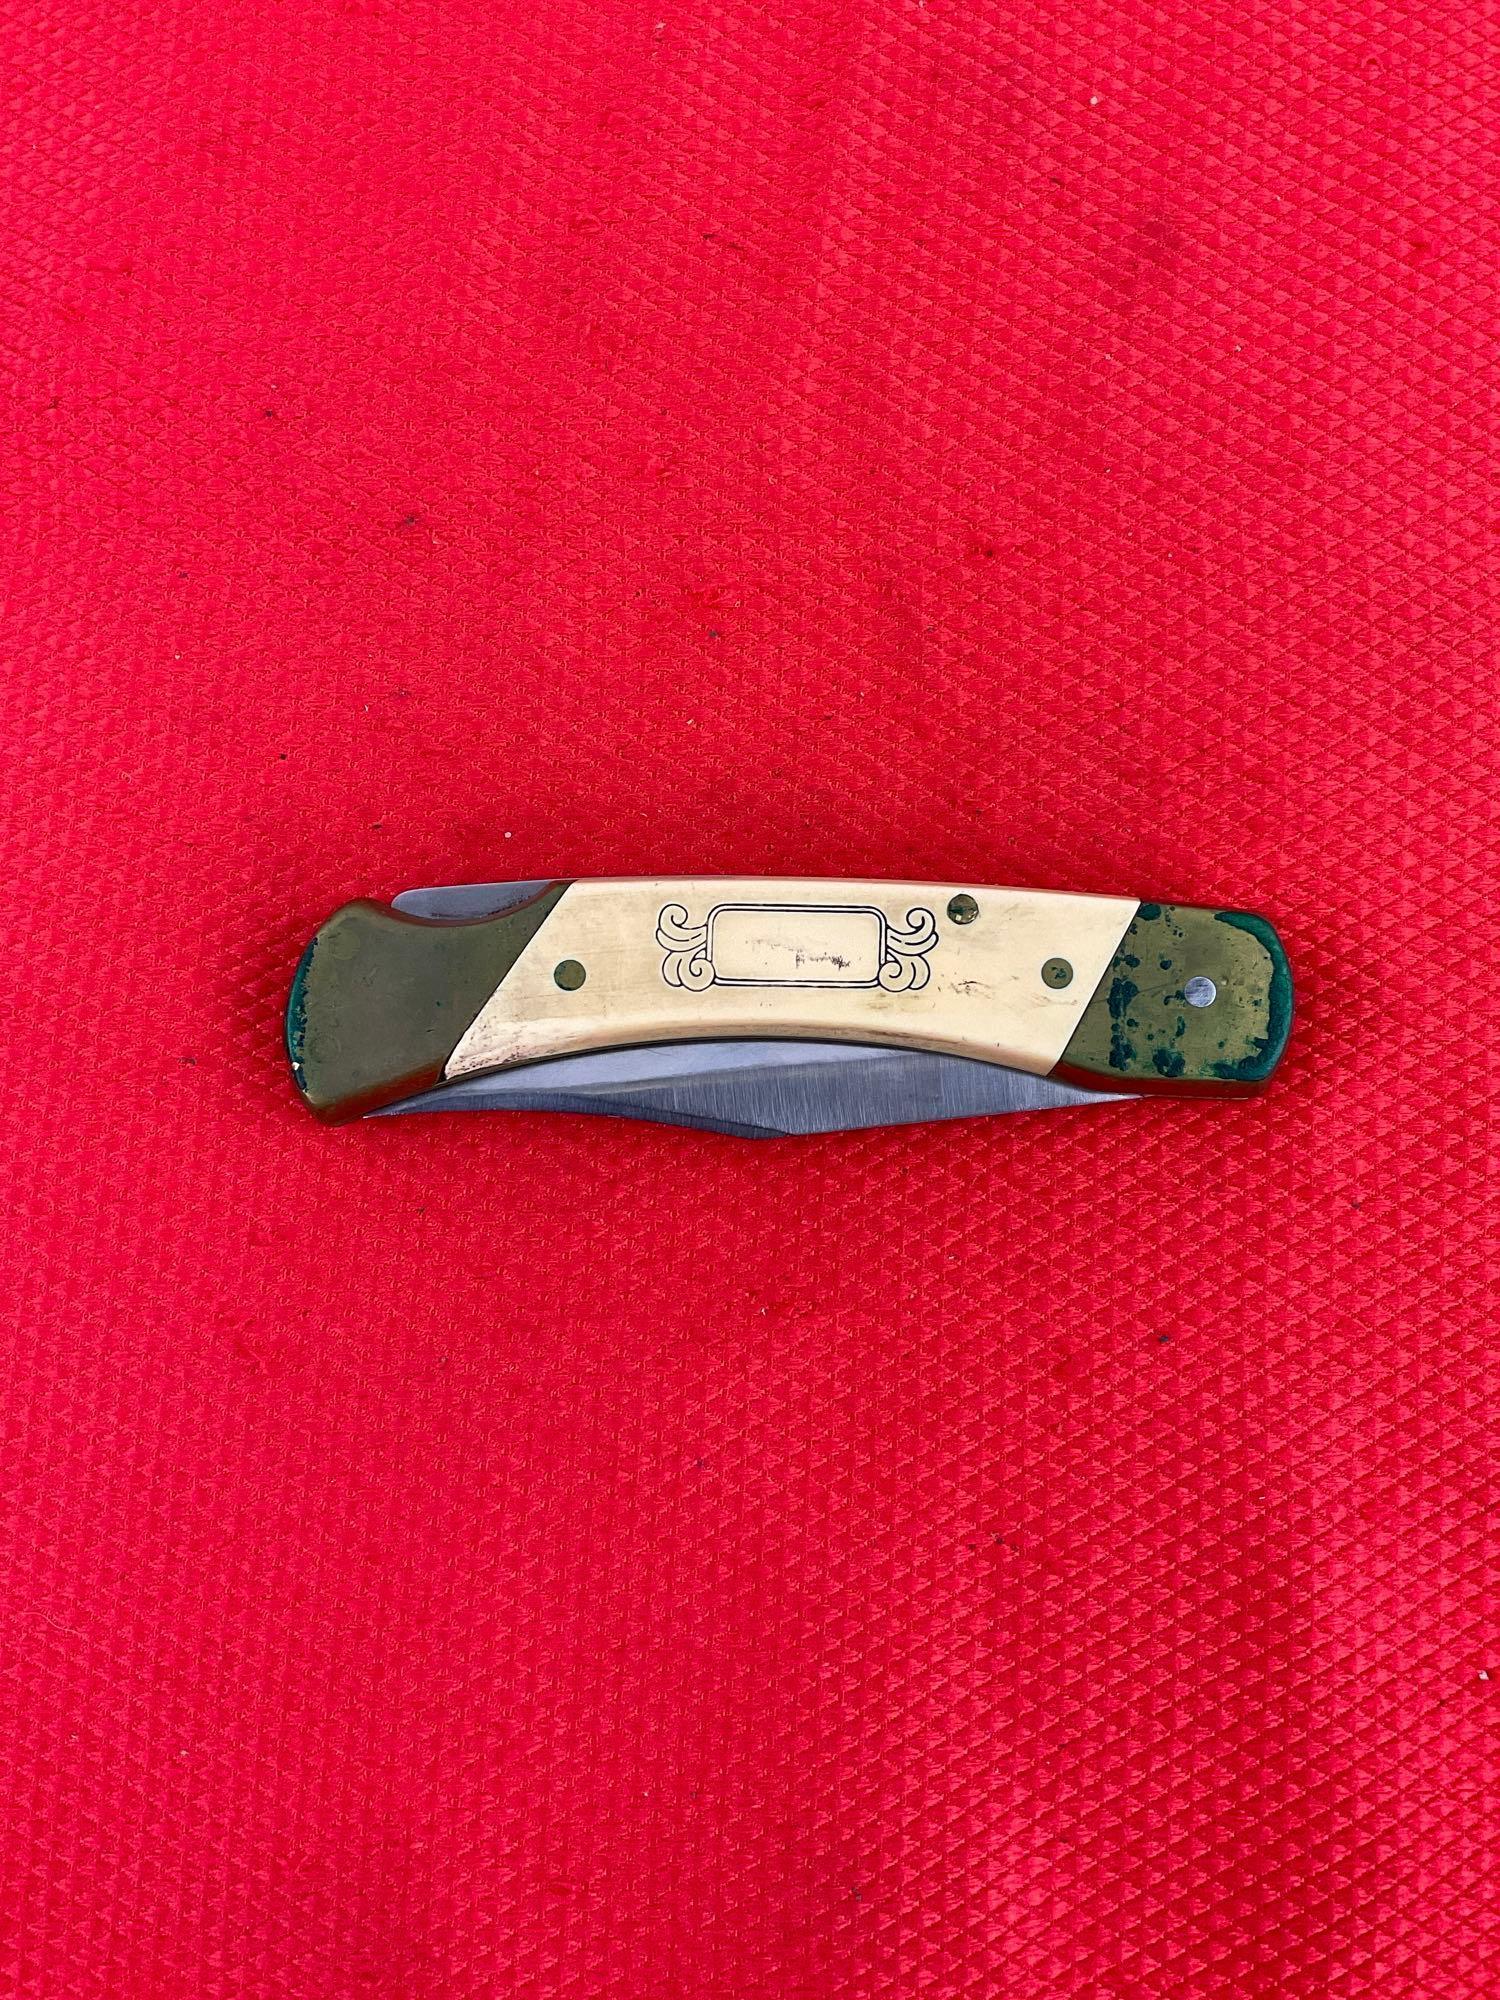 Vintage Schrade+ 3.5" Steel Folding Blade Pocket Knife Model SC507 w/ Etched Elk & Sheath. See pi...